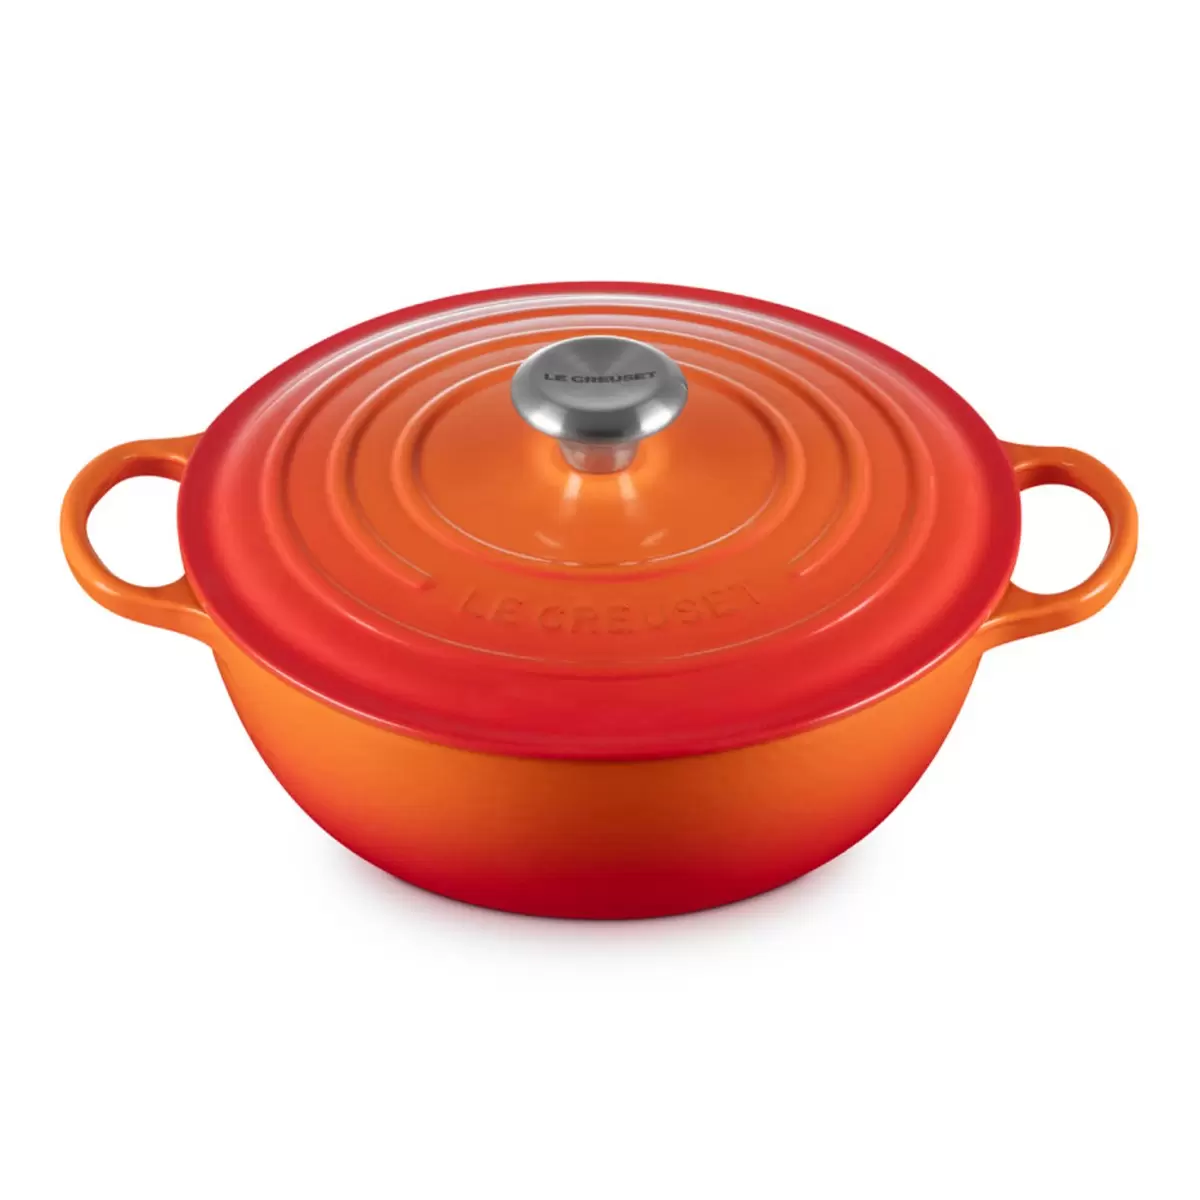 Le Creuset 琺瑯鑄鐵媽咪鍋 含鋼頭鍋蓋 28公分 火焰橘